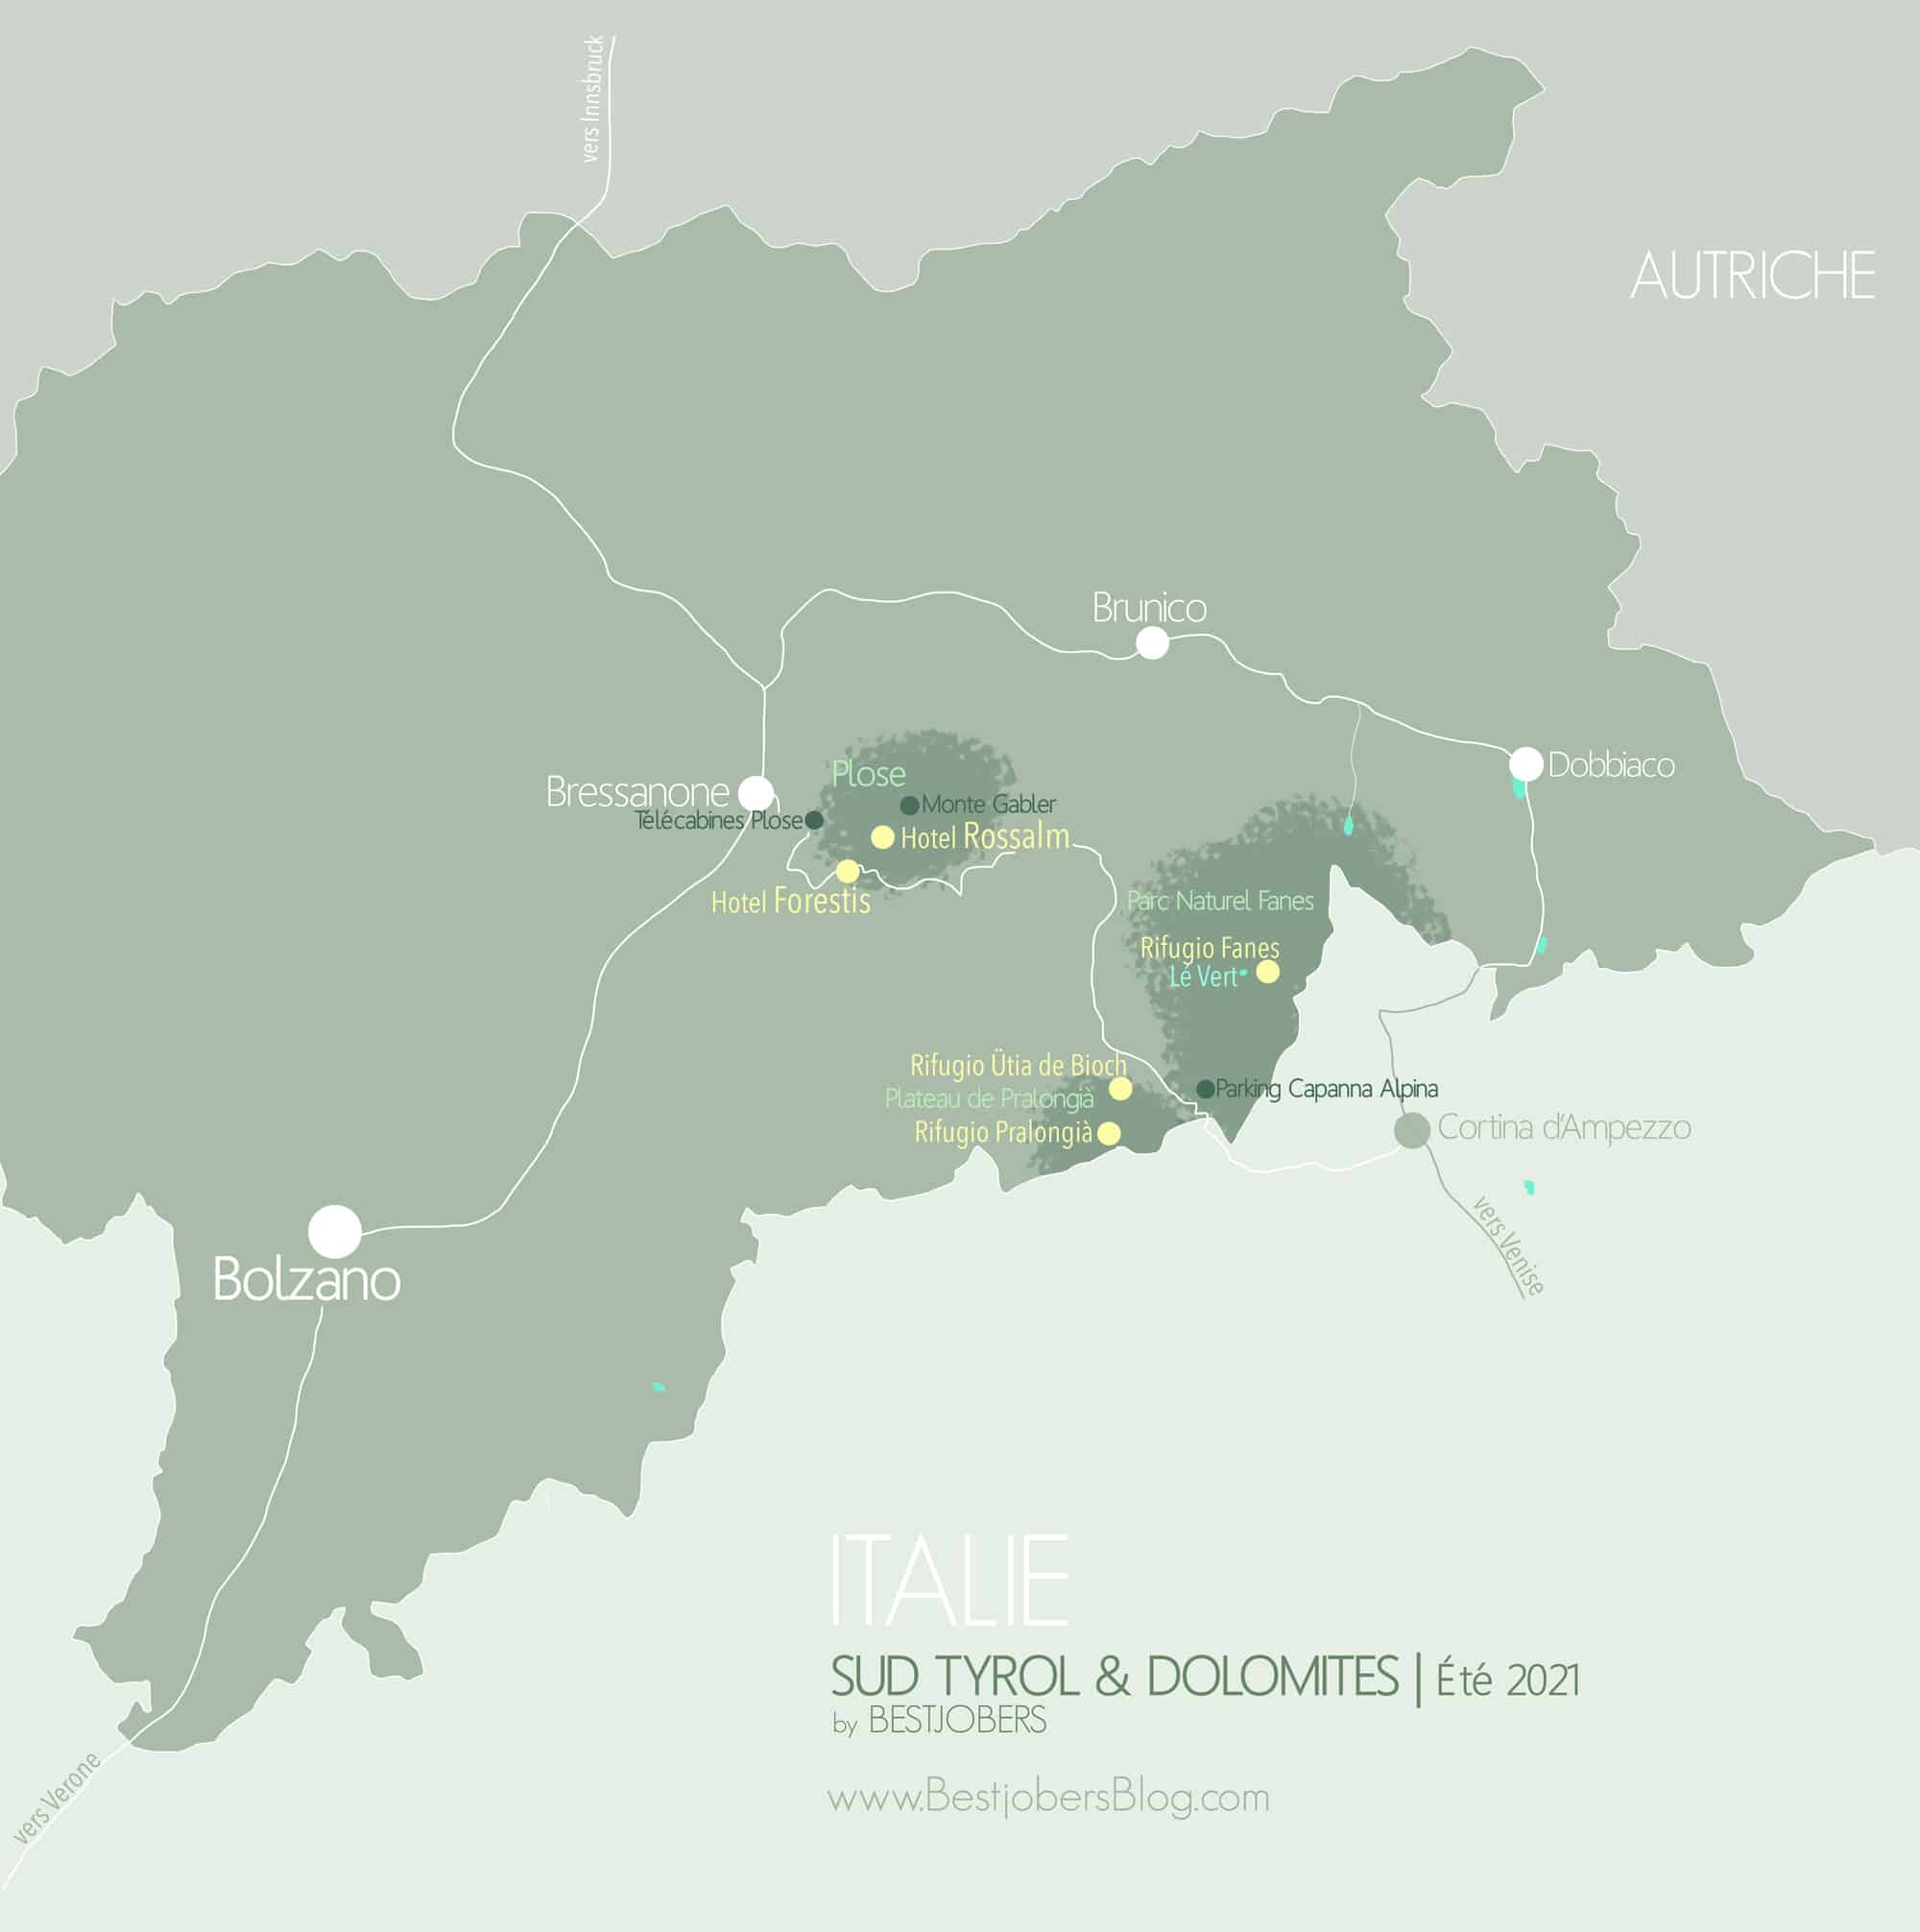 Carte Sud Tyrol Bestjobers 2021